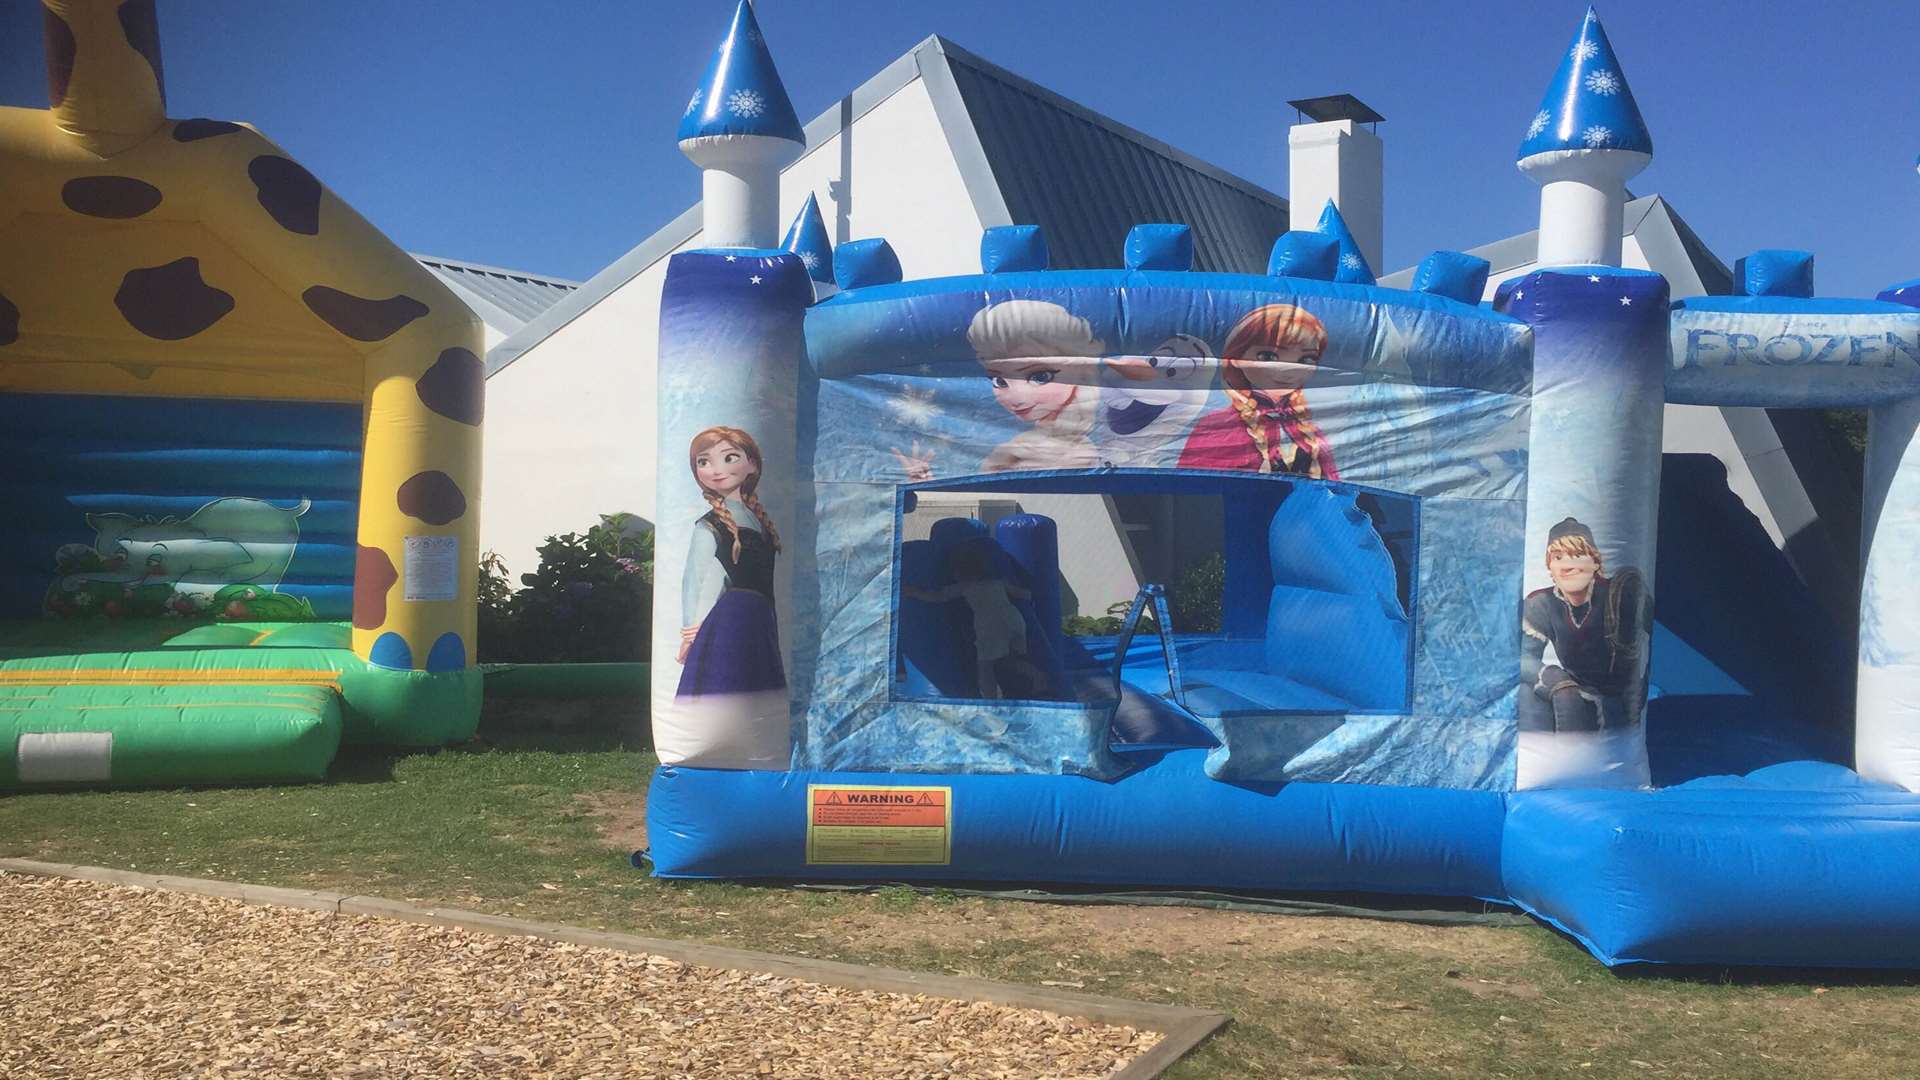 The children enjoyed the bouncy castle.